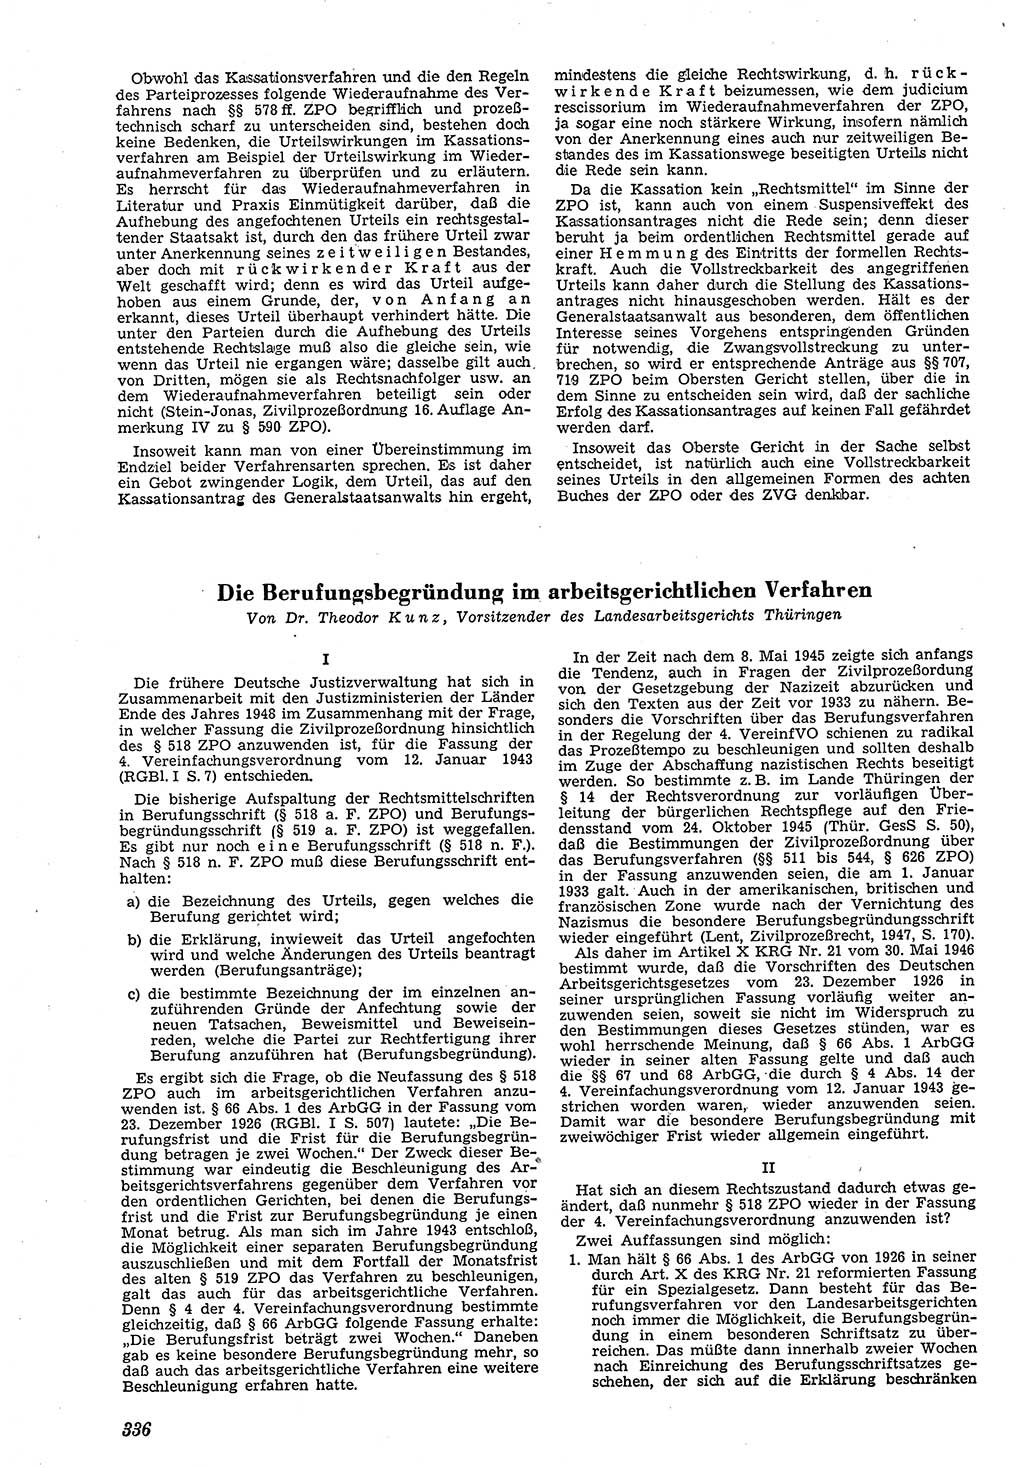 Neue Justiz (NJ), Zeitschrift für Recht und Rechtswissenschaft [Deutsche Demokratische Republik (DDR)], 4. Jahrgang 1950, Seite 336 (NJ DDR 1950, S. 336)